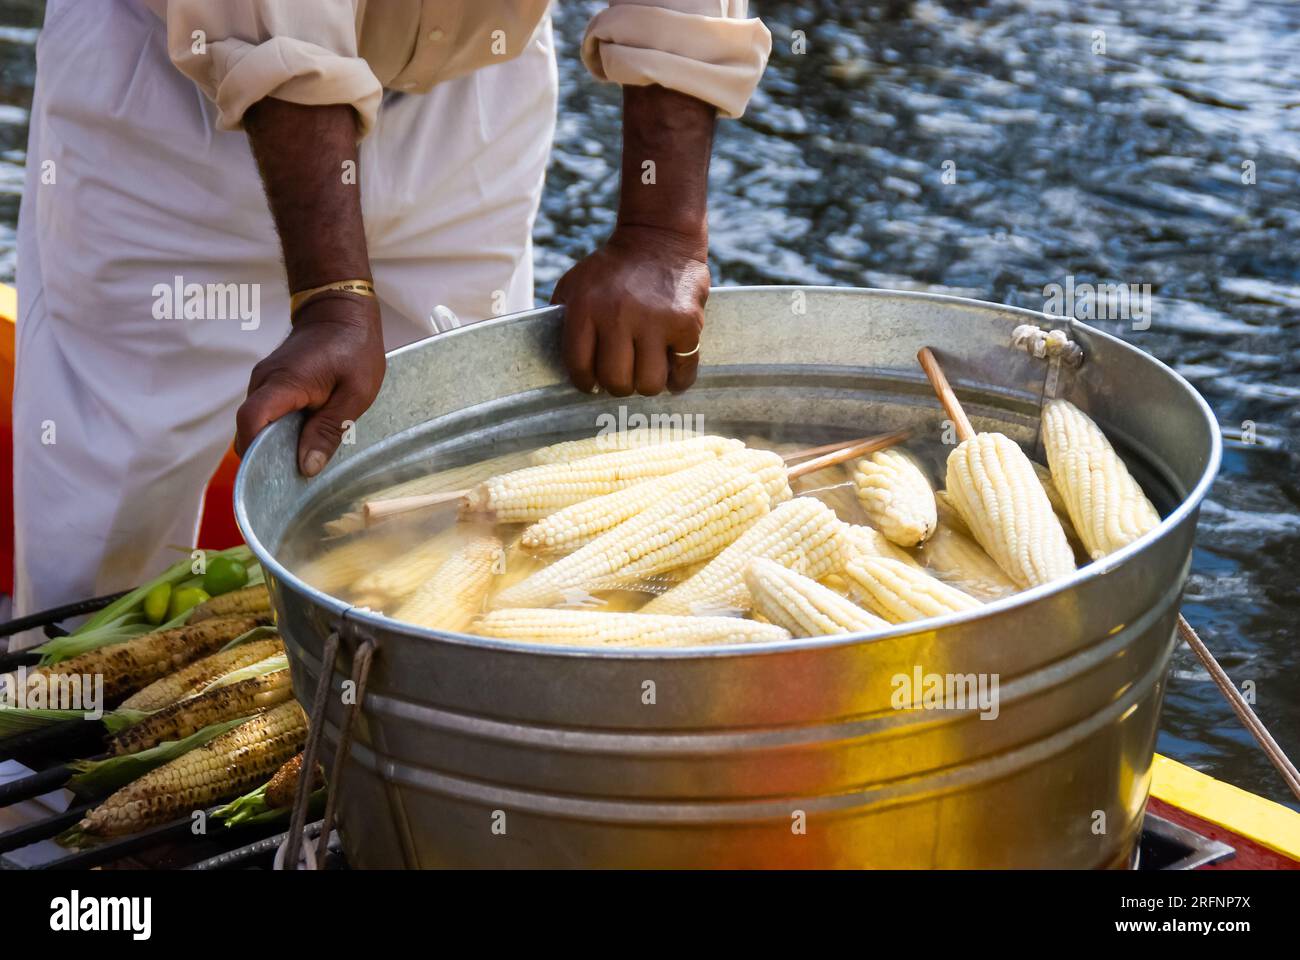 Nahaufnahme der Hände eines Straßenverkäufers, der eine große, mit gekochtem Mais gefüllte Wanne sicher hält, ein beliebter Snack in Xochimilco, Mexiko. Stockfoto